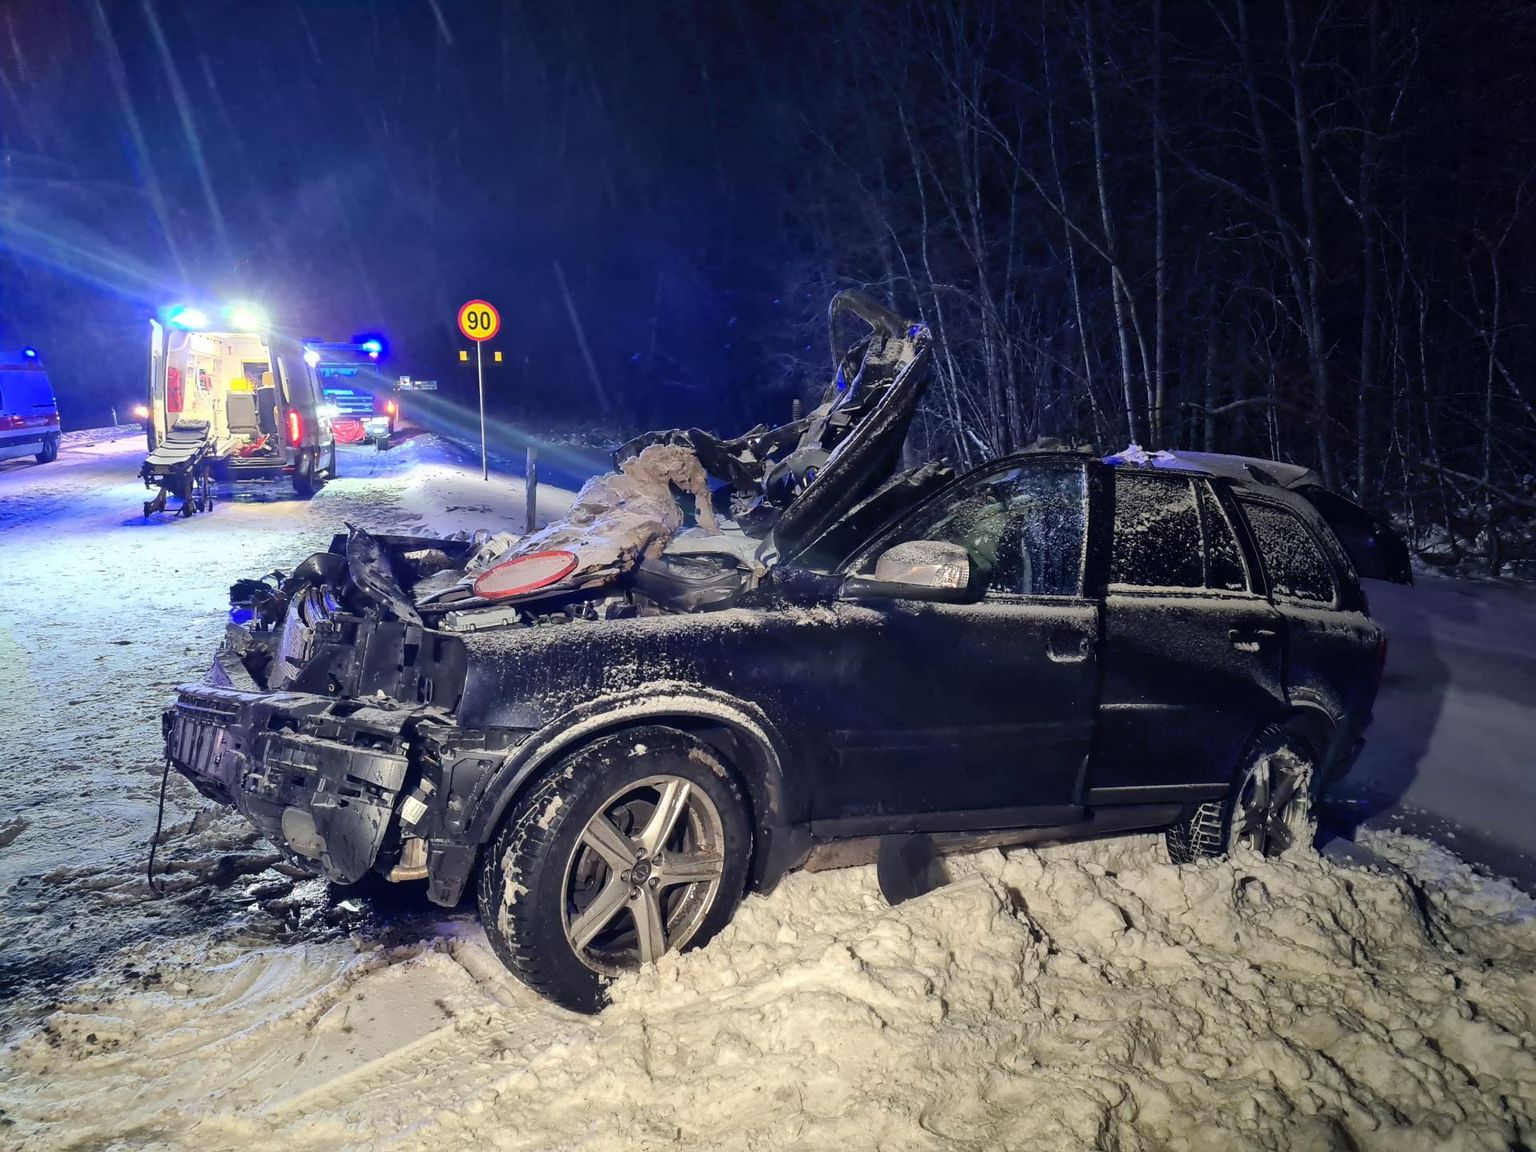 Avarii oli niivõrd raske, et Volvos olnud kannatanud tuli autost välja lõigata. Paraku ei õnnestunud 22-aastase Tambet Silla elu päästa. 